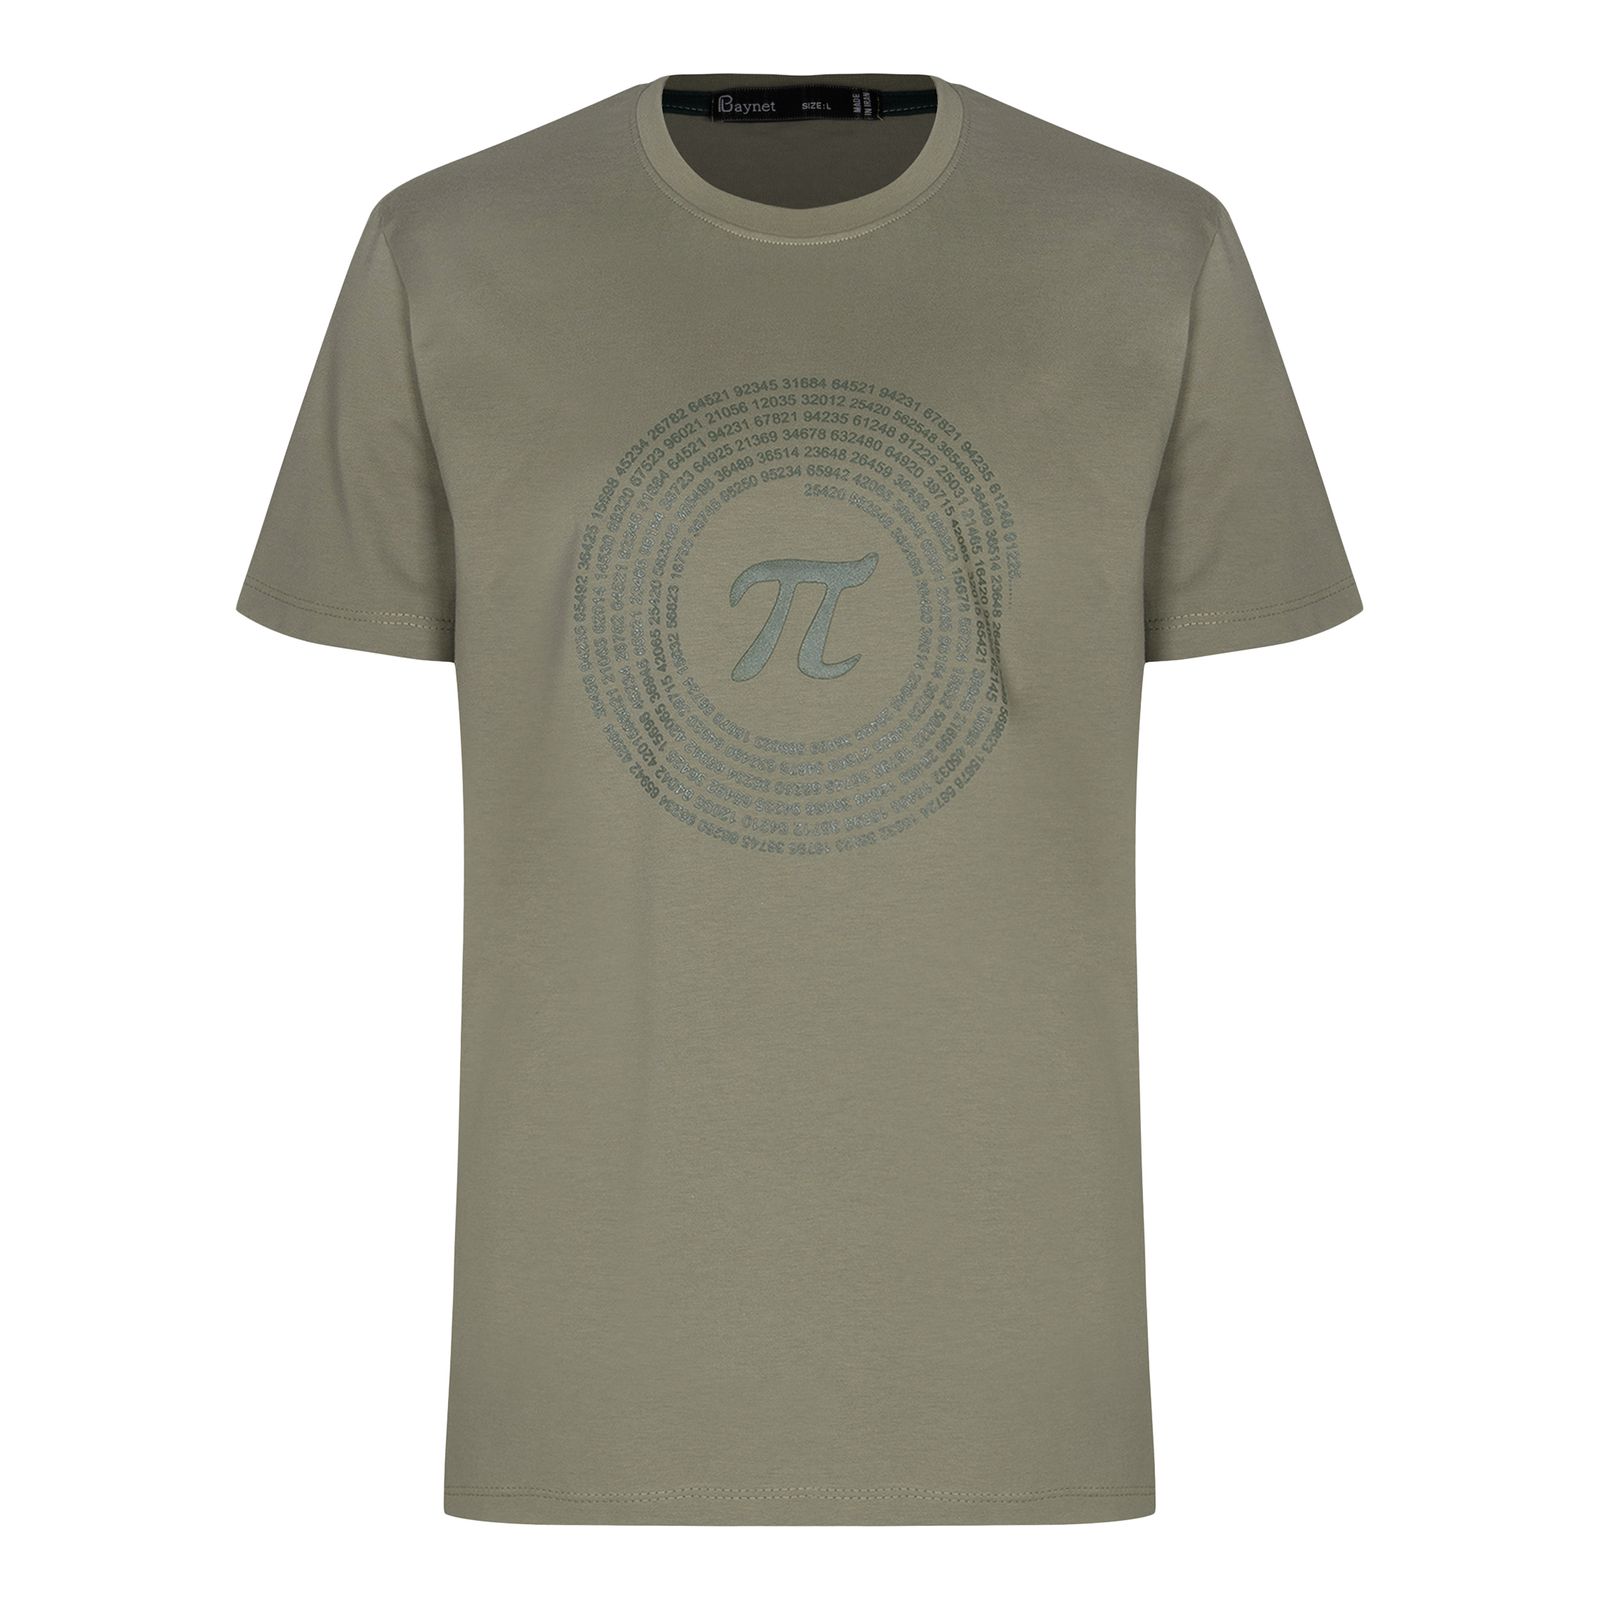 تی شرت آستین کوتاه مردانه باینت مدل 764-3 رنگ سبز روشن -  - 2